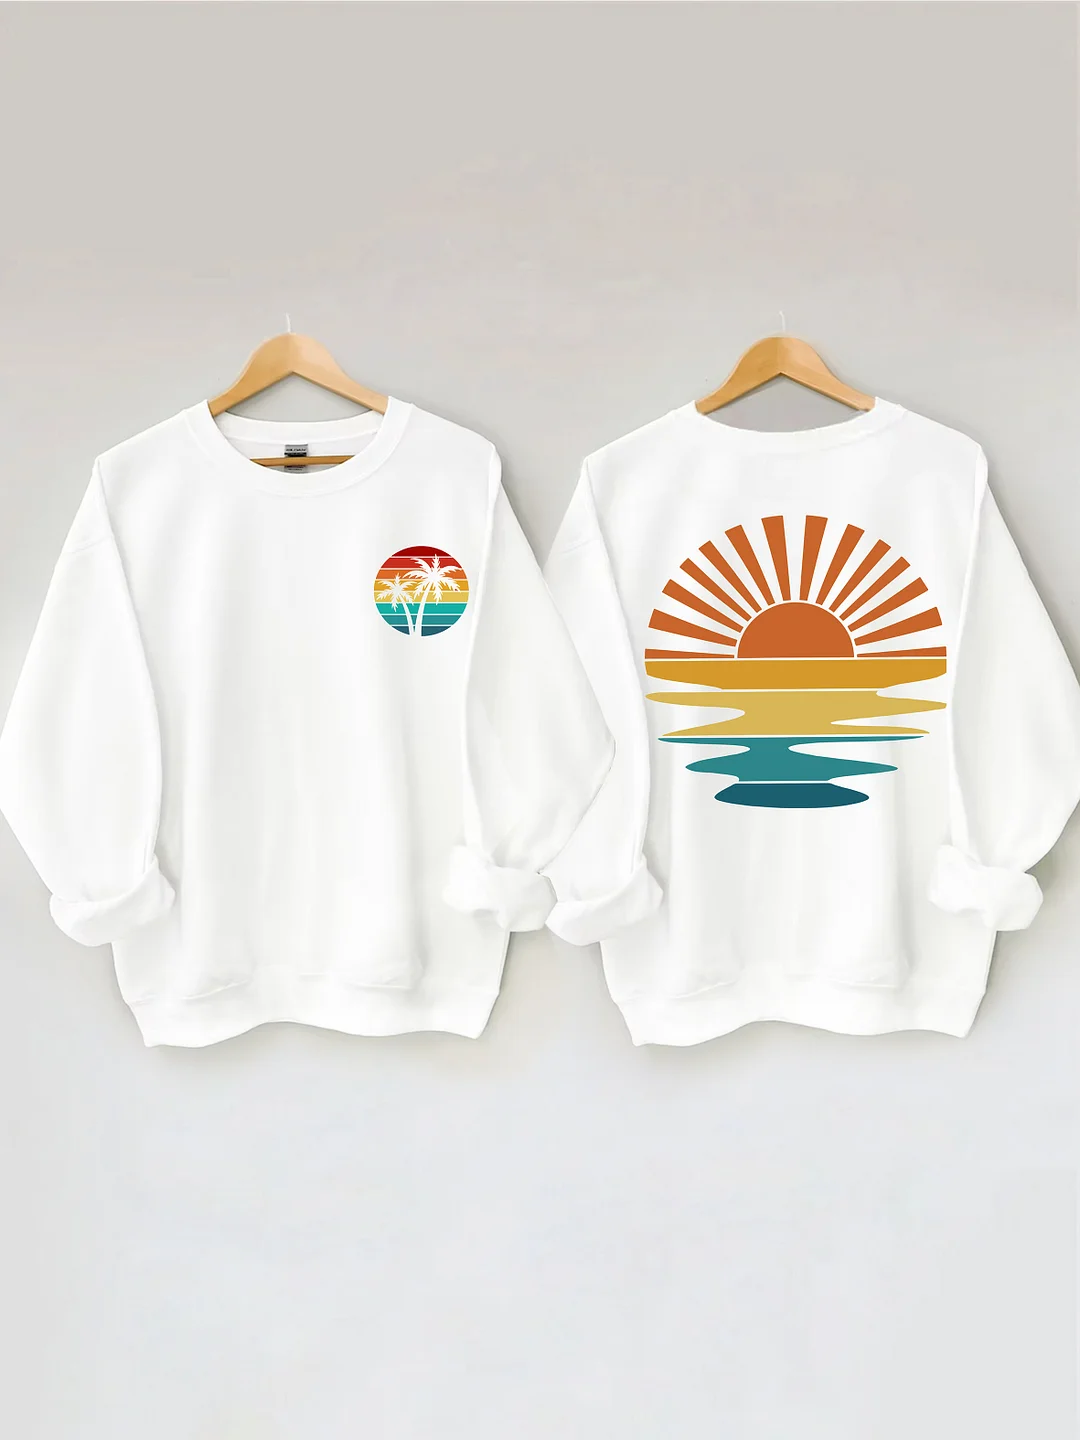 Retro Sunset Rays Wavy Sweatshirt